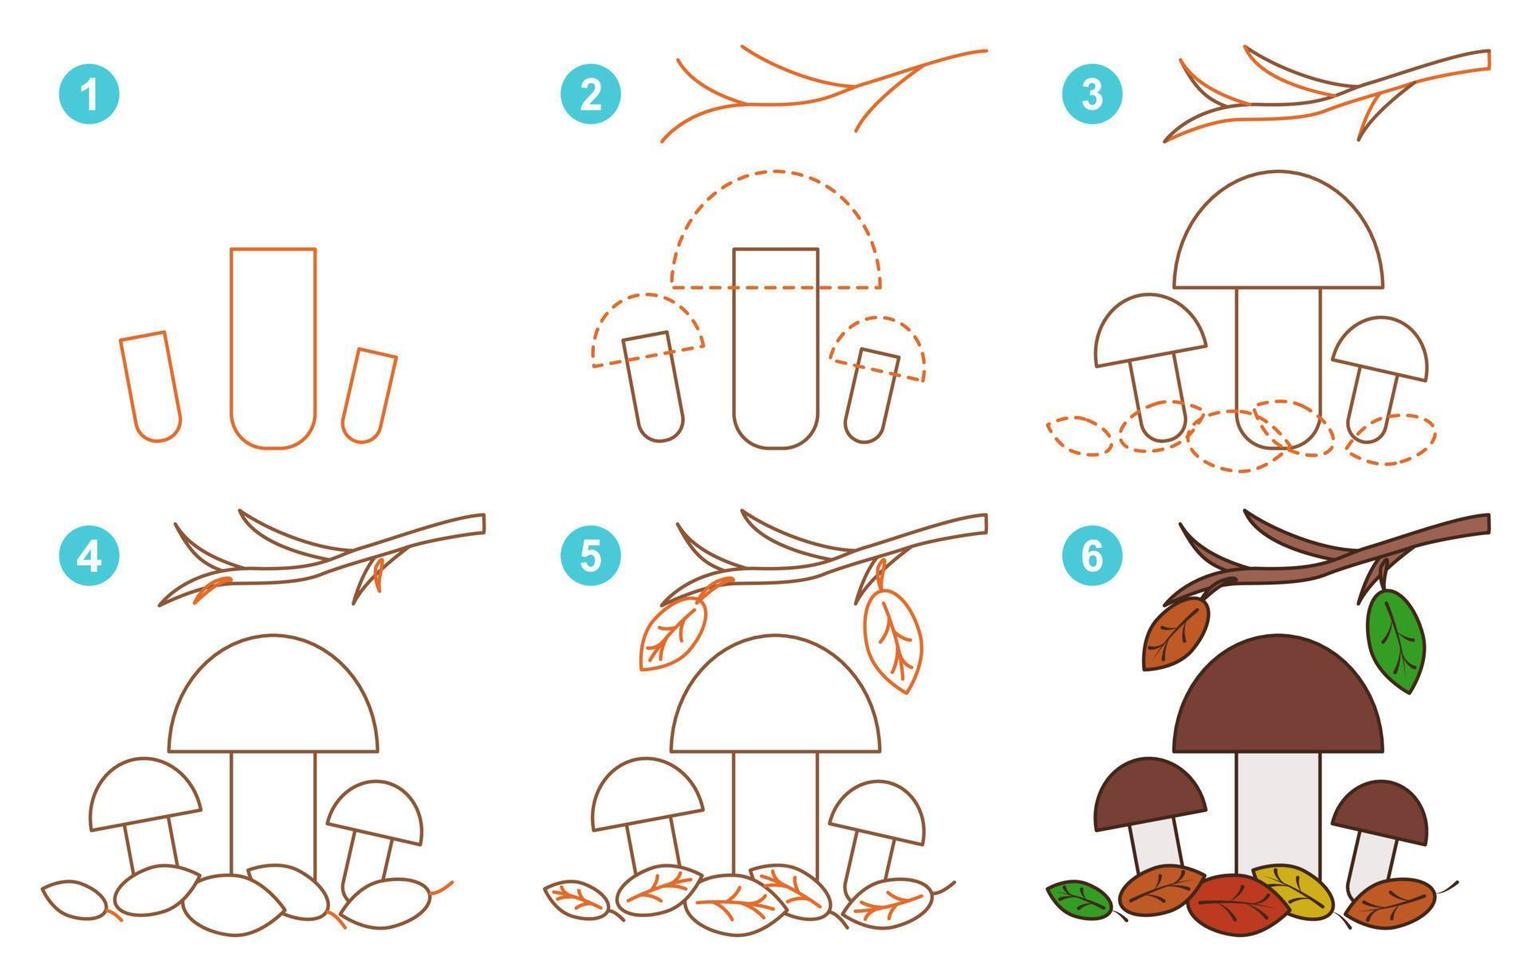 instruções para desenhar cogumelos porcini fofos. siga passo por cogumelos porcini. planilha para criança aprendendo a desenhar cogumelos. jogo para página de vetor infantil. esquema para desenhar cogumelos porcini.